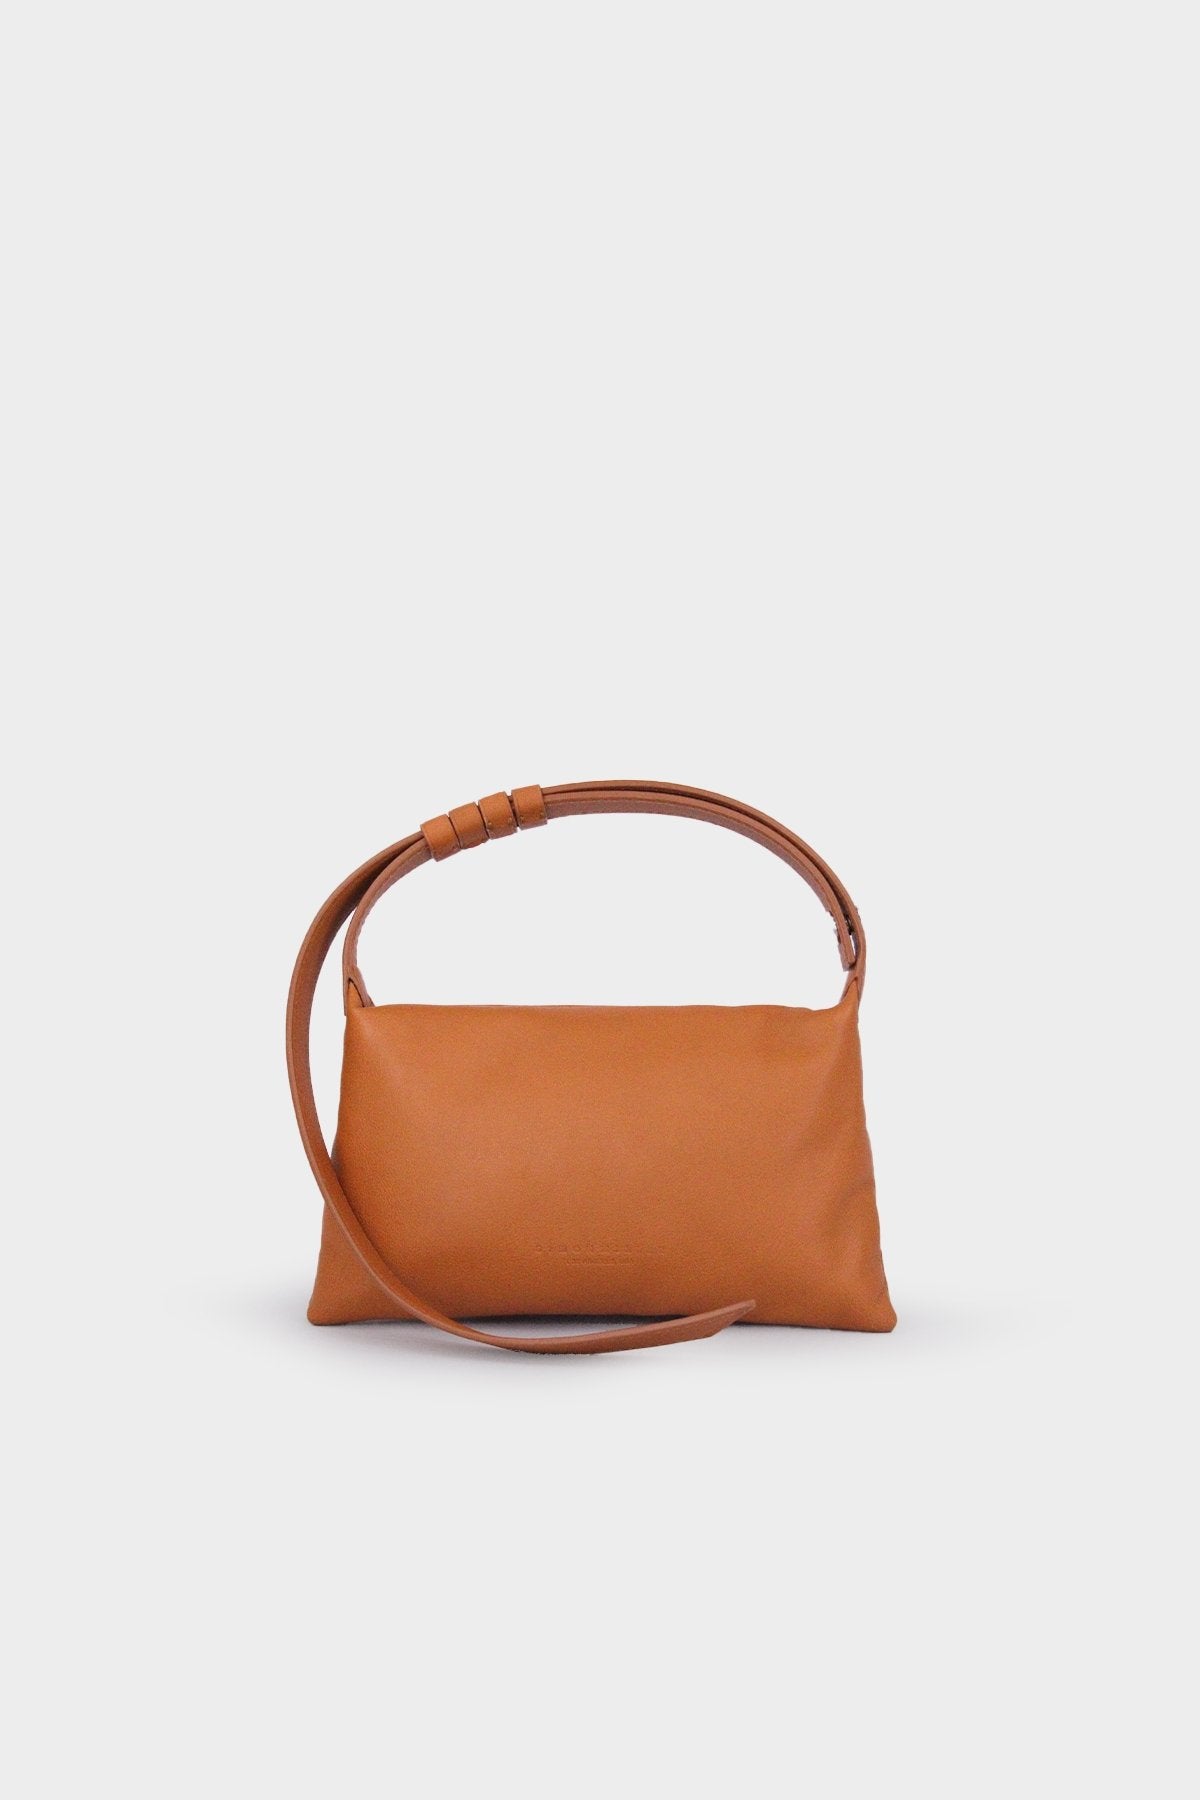 Mini Puffin Bag in Caramel - shop-olivia.com